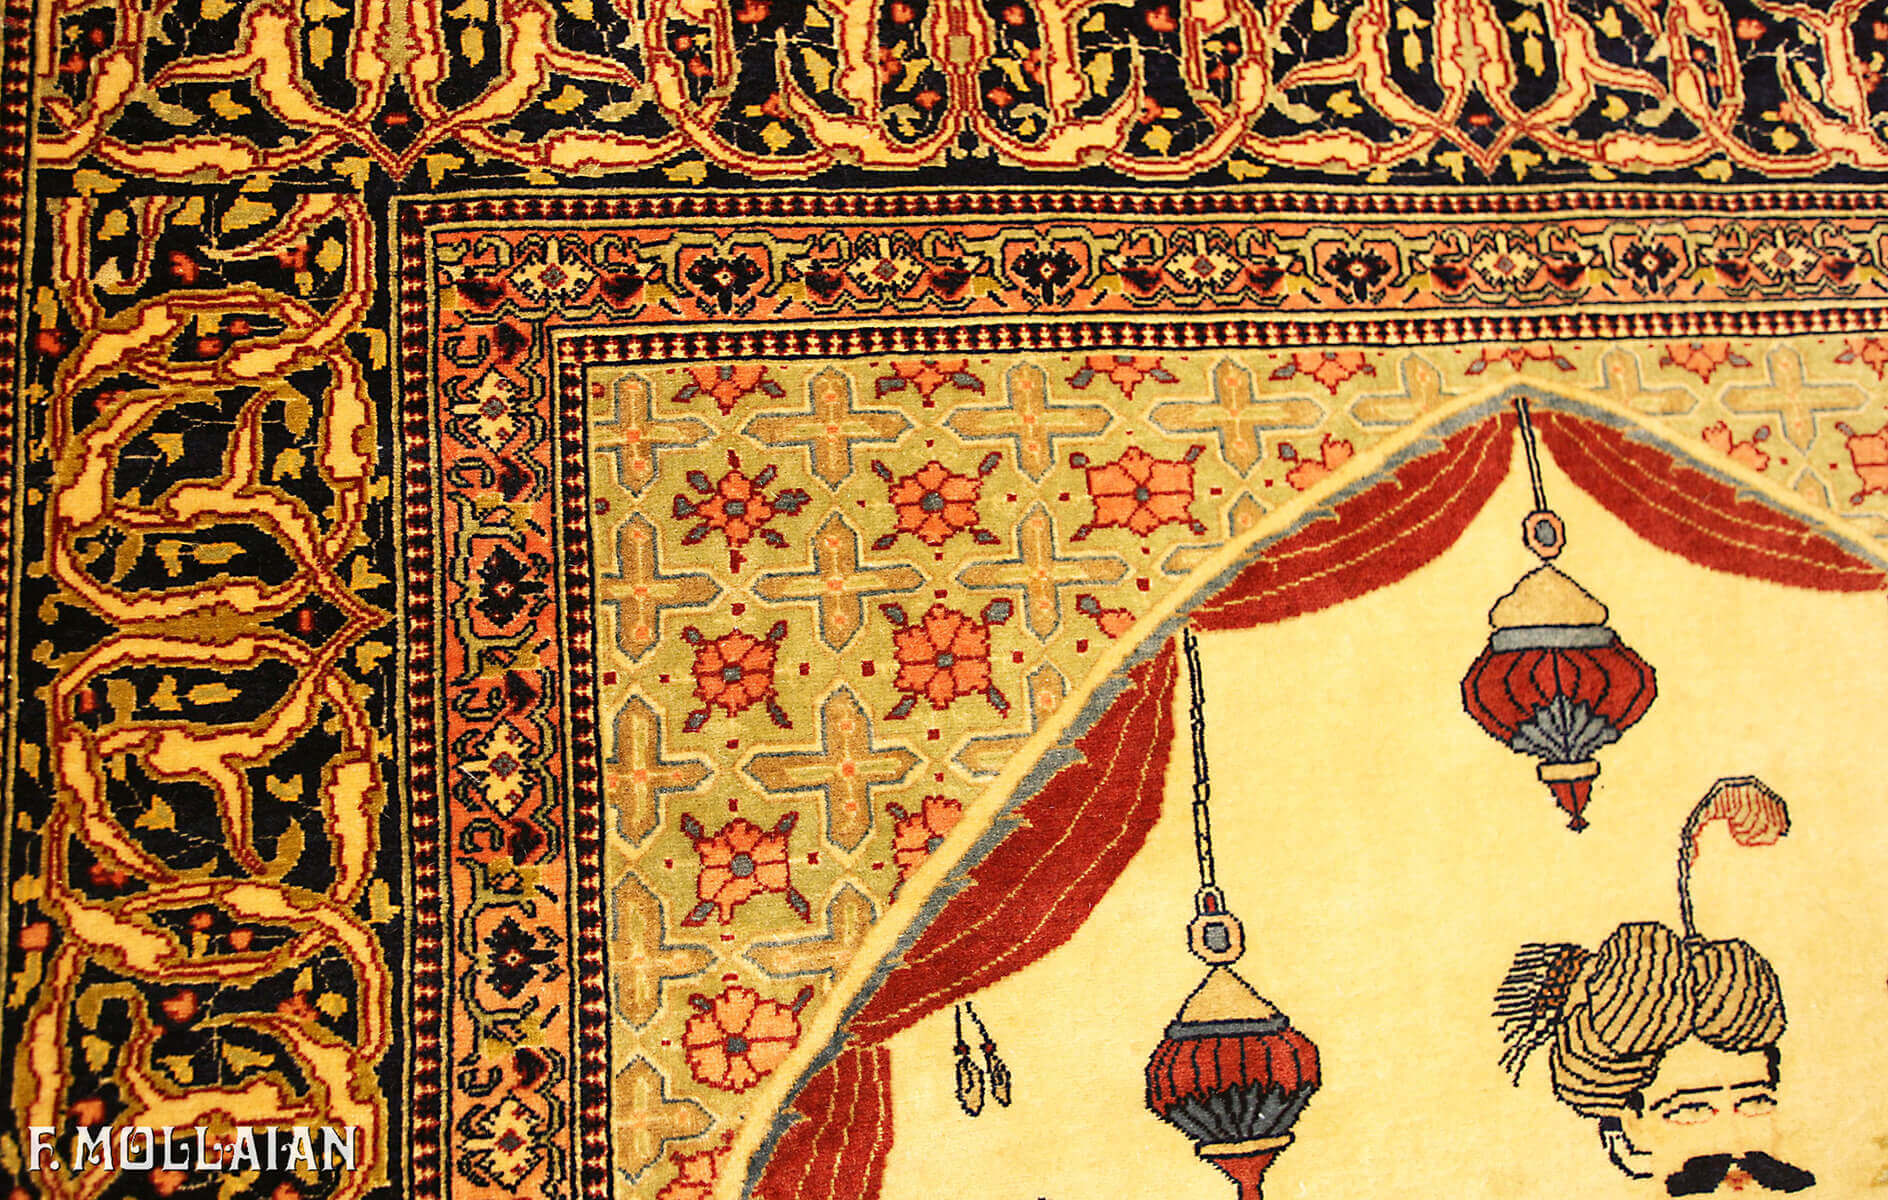 Pictorial “Shah Abbass” Antique Kashan Persian Rug n°:37843154